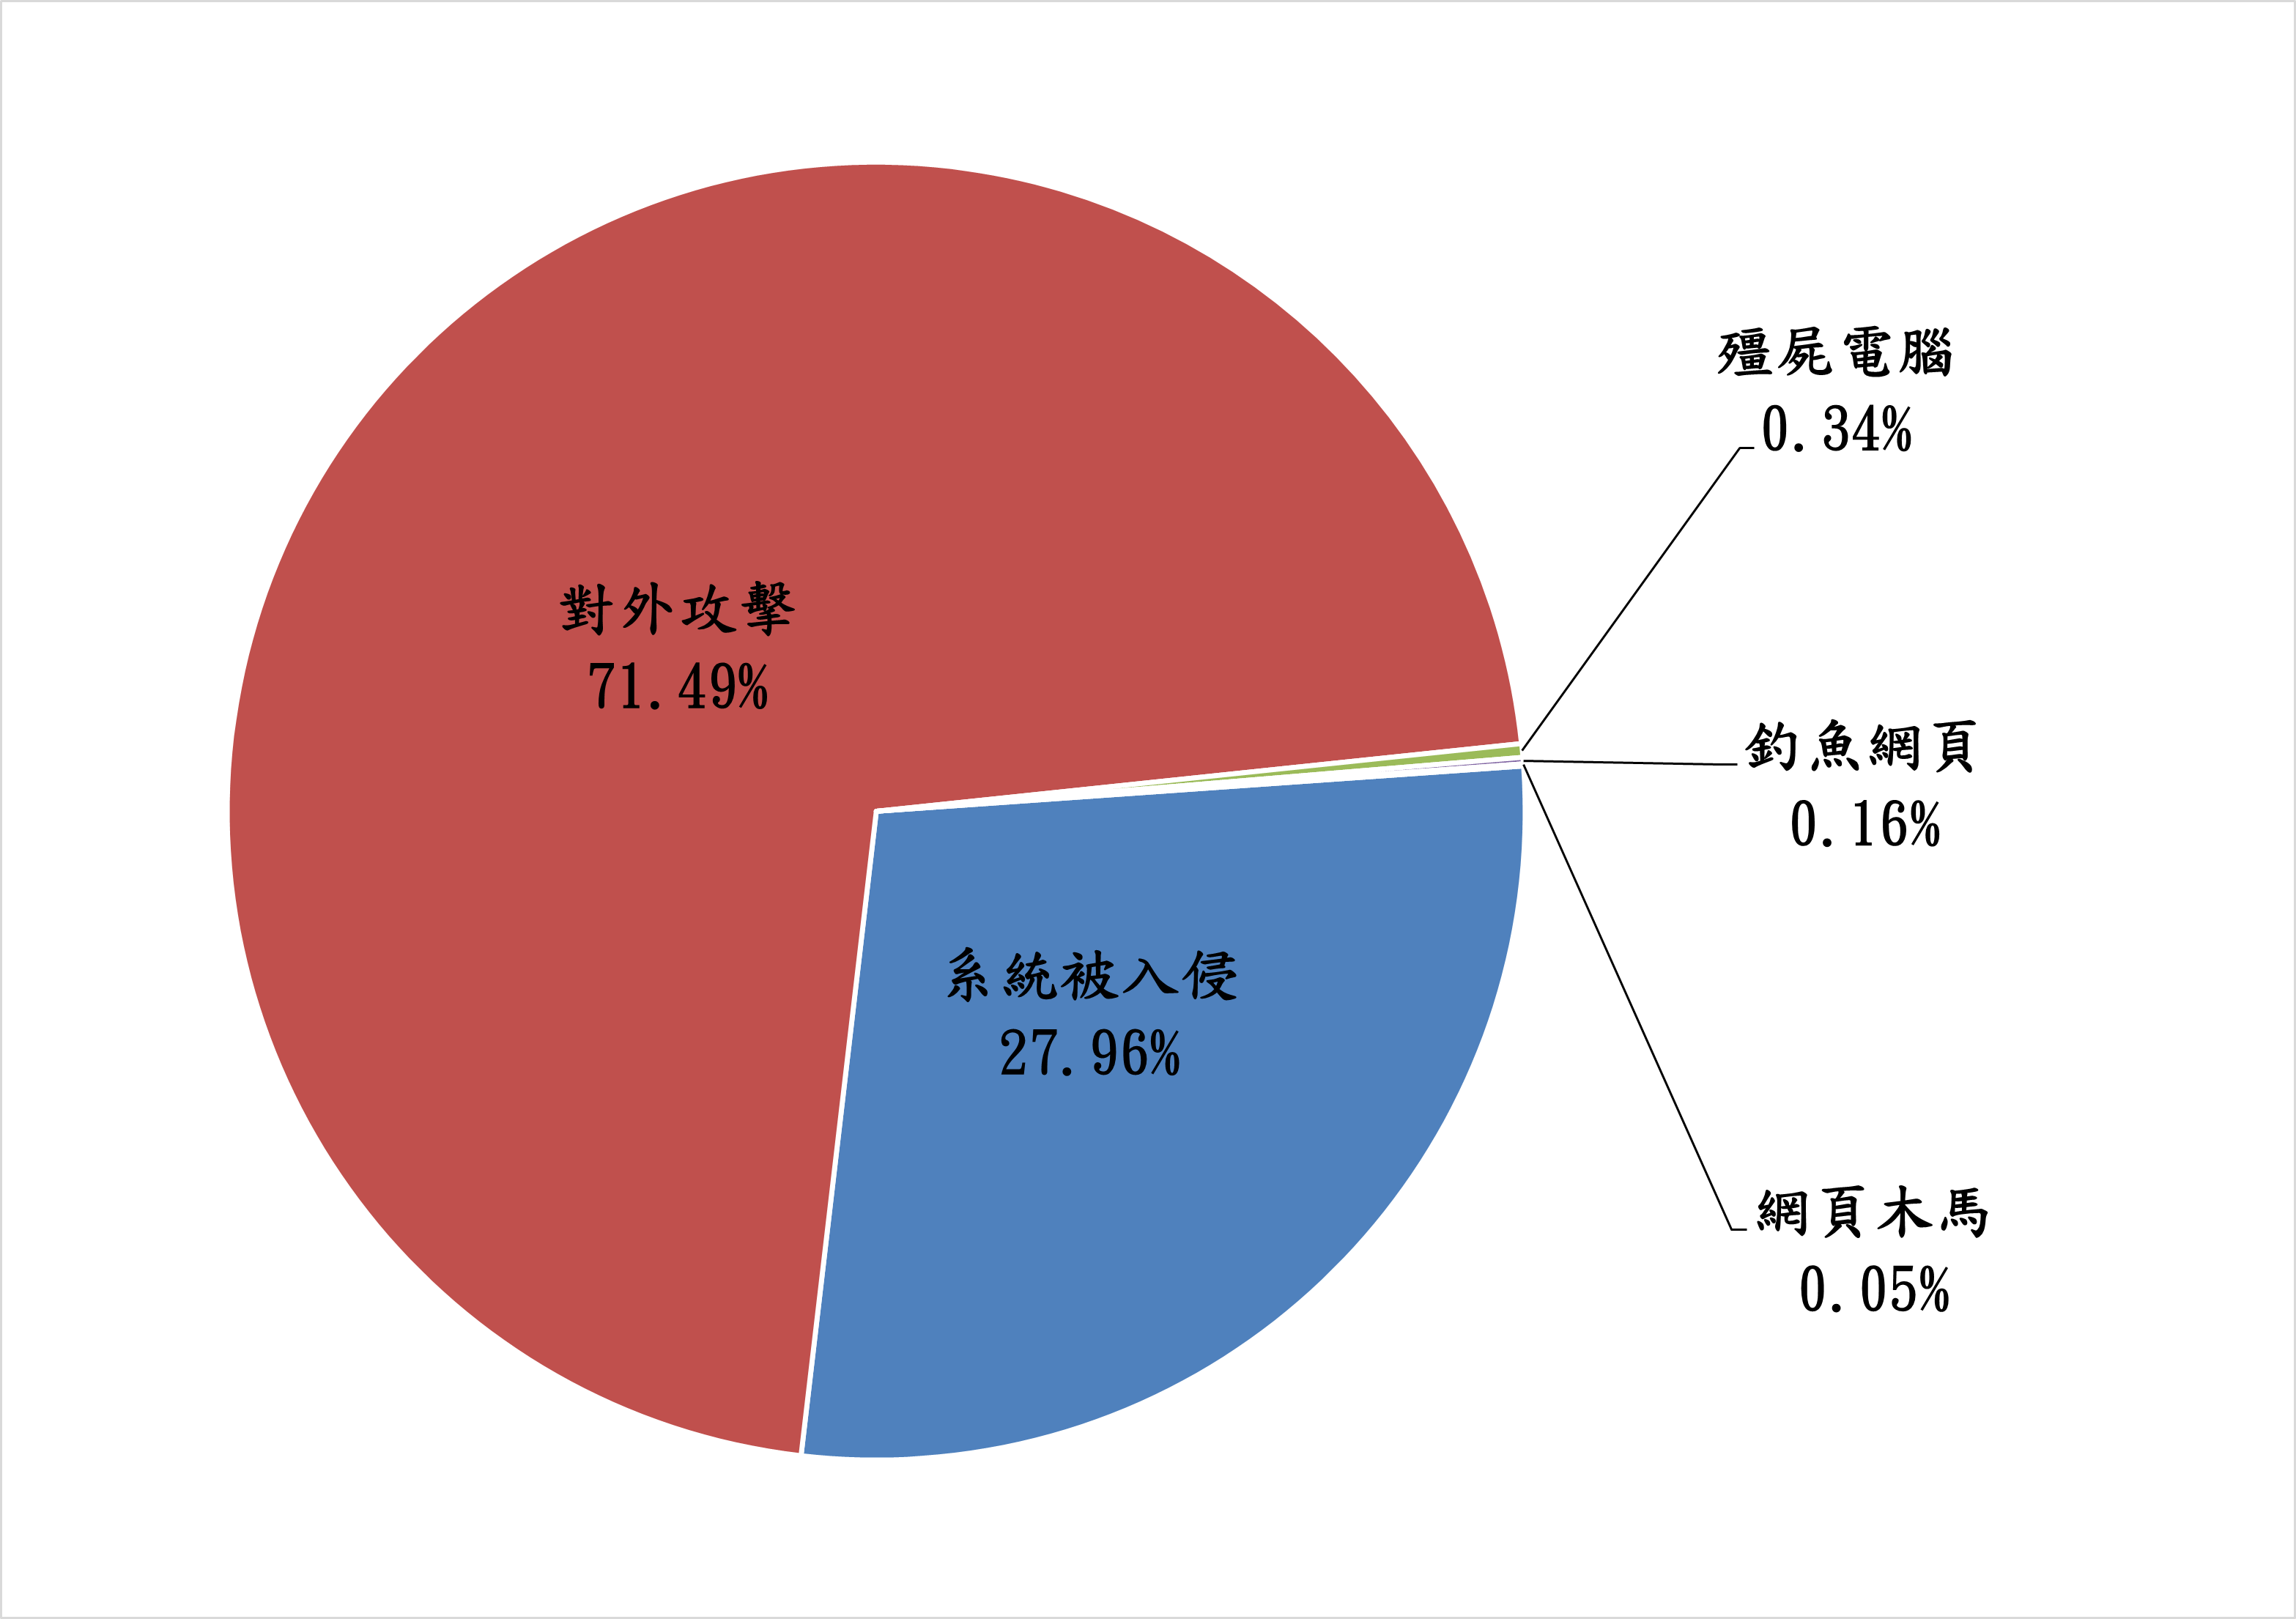 對外攻擊71.49% 系統被入侵27.96% 殭屍電腦0.34% 釣魚網頁0.16% 網頁木馬0.05%